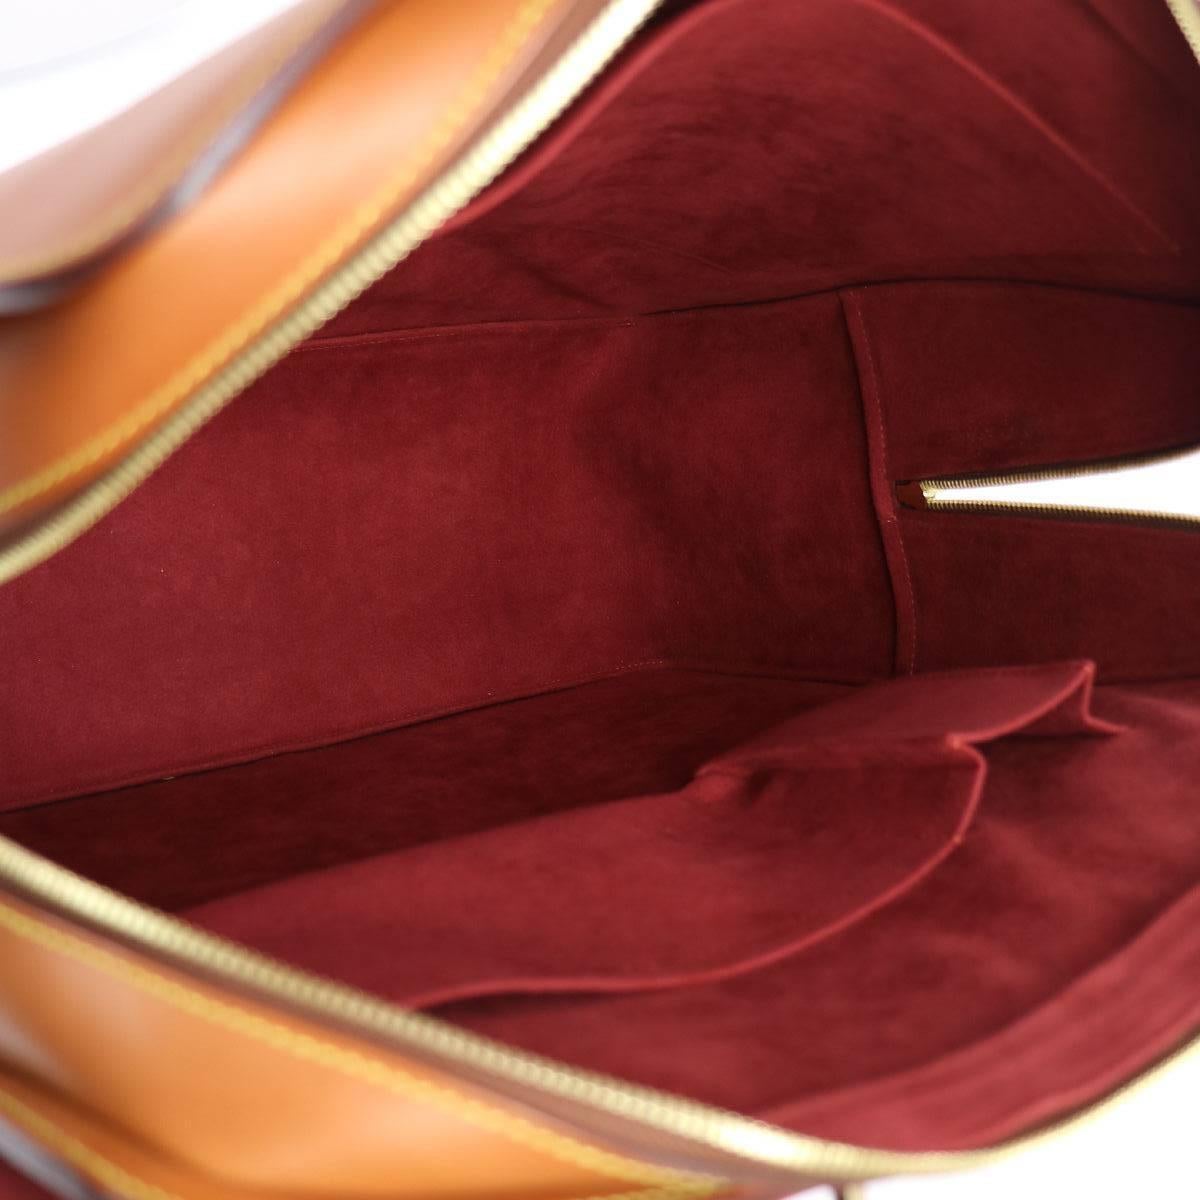 Louis Vuitton Cognac Leather Carryall Men's Women's Travel Top Handle Tote Bag 1